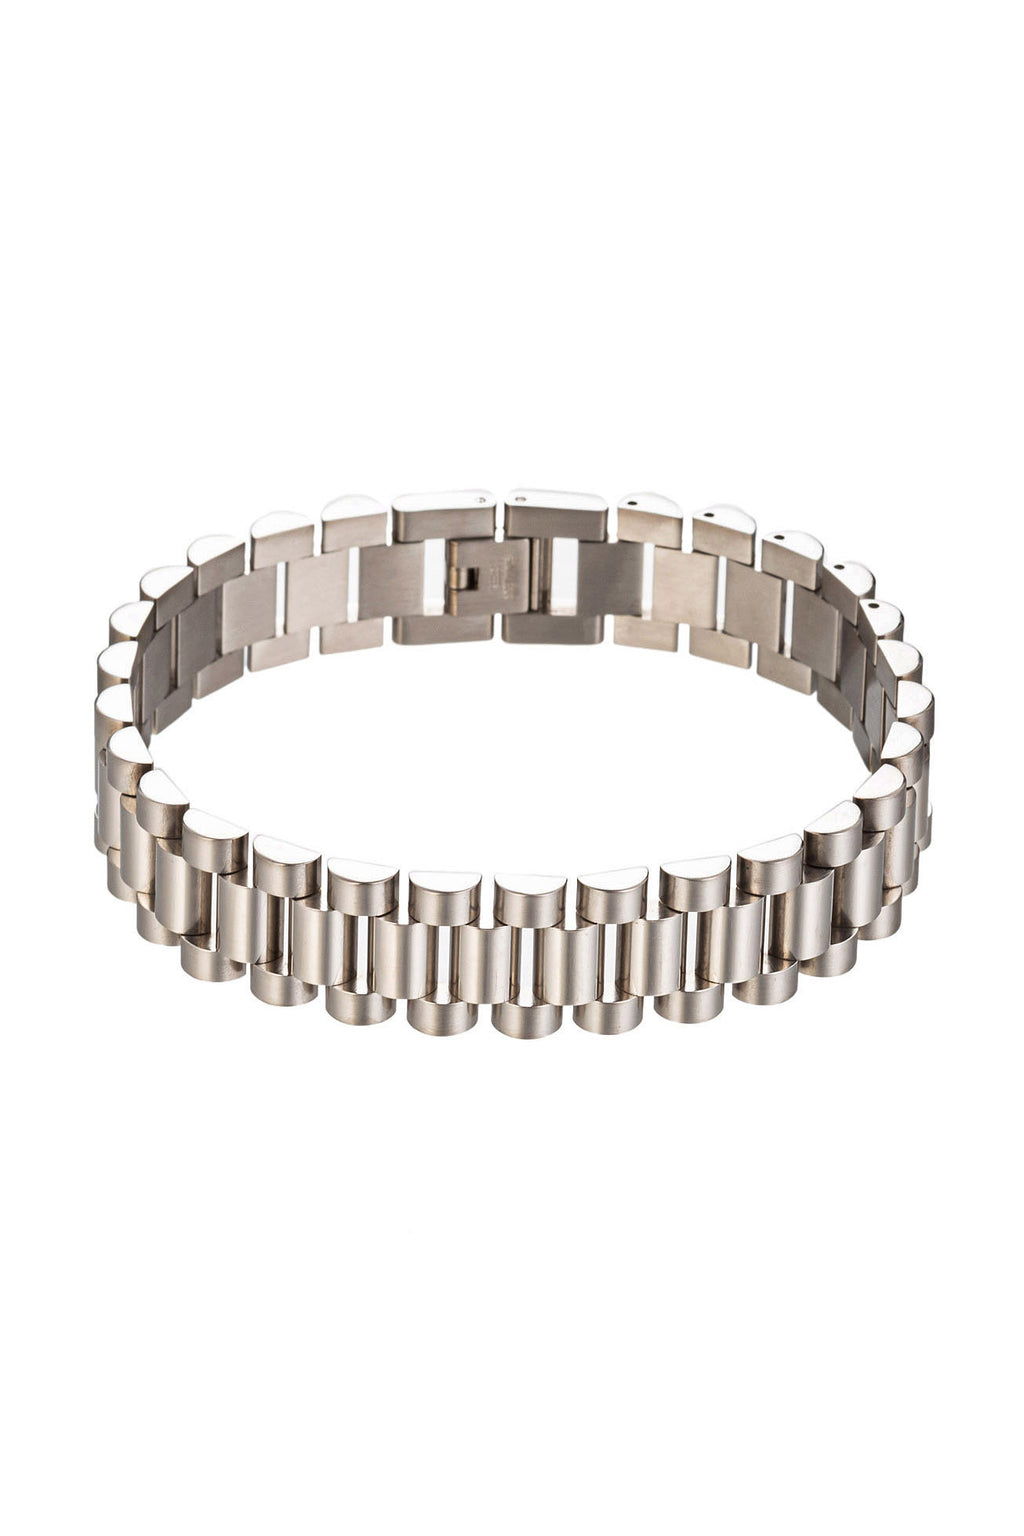 Silver titanium chain link bracelet.